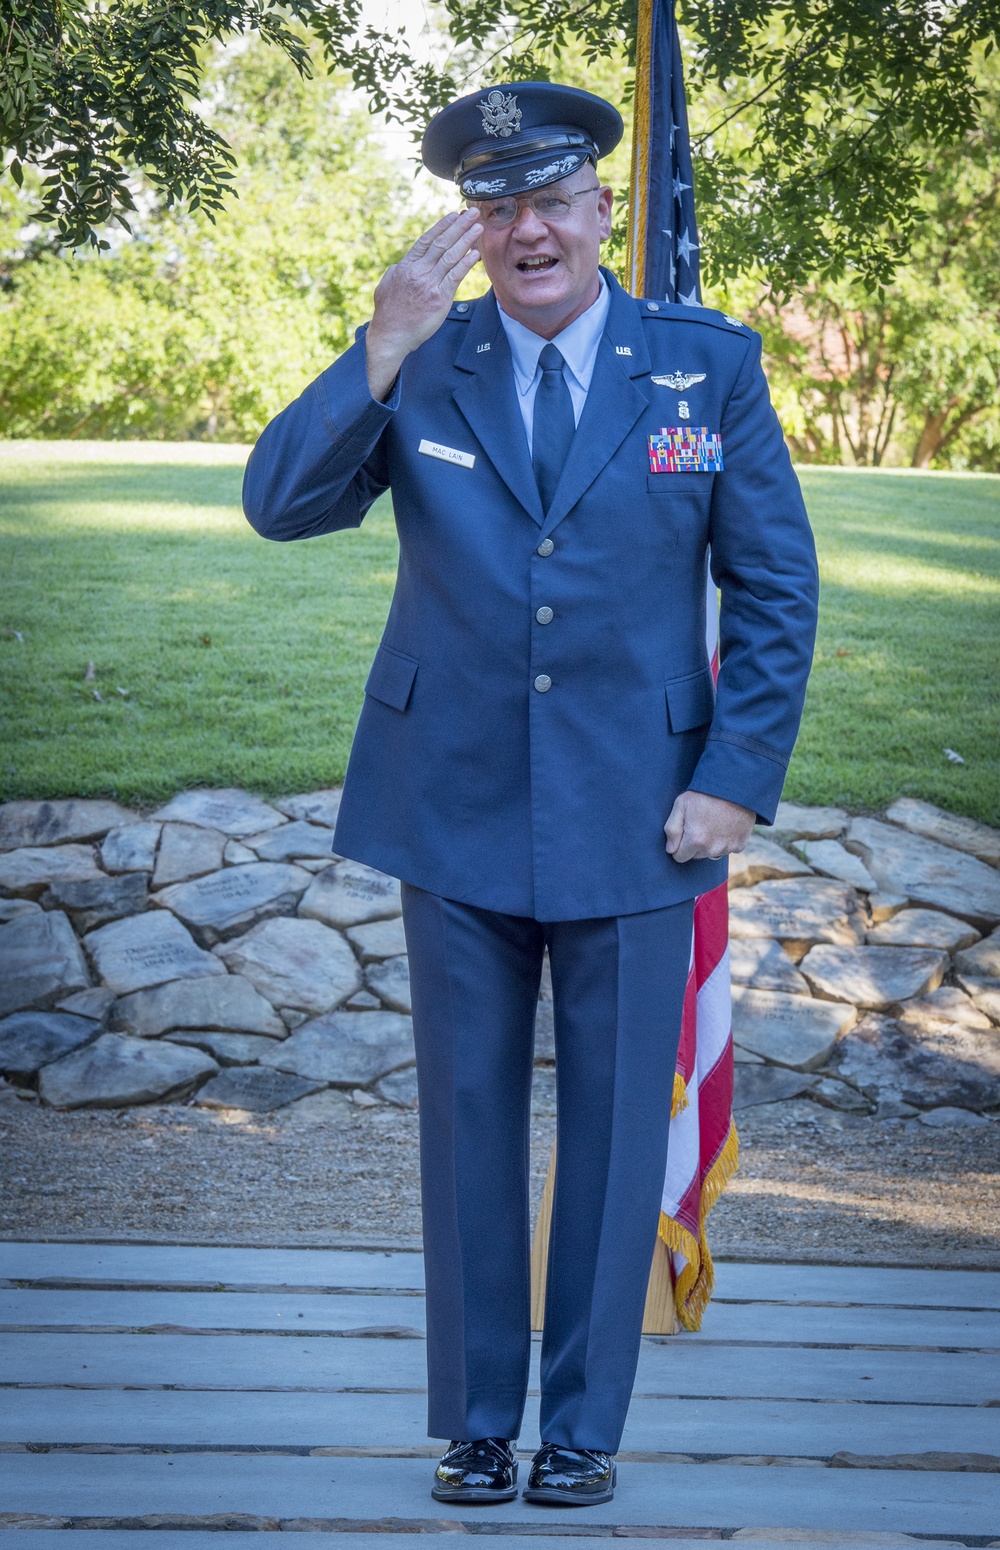 Lt. Col. Michael Mac Lain